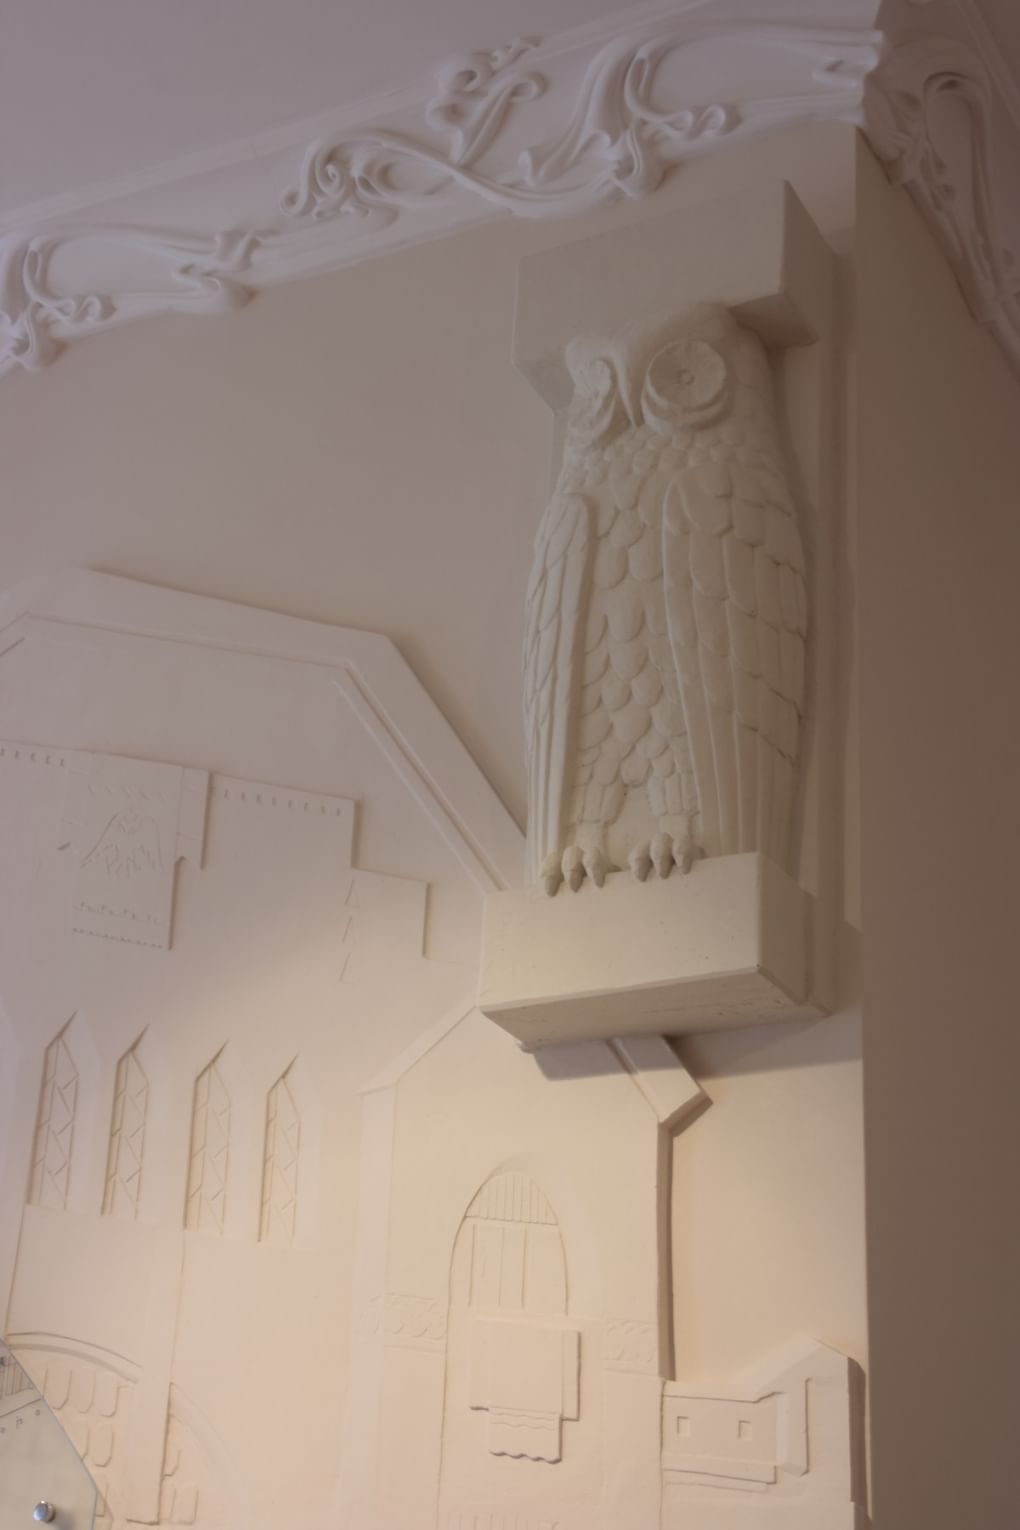 Скульптурное оформление стены с изображением совы. Особняк М.П. фон Брадке, Ульяновск